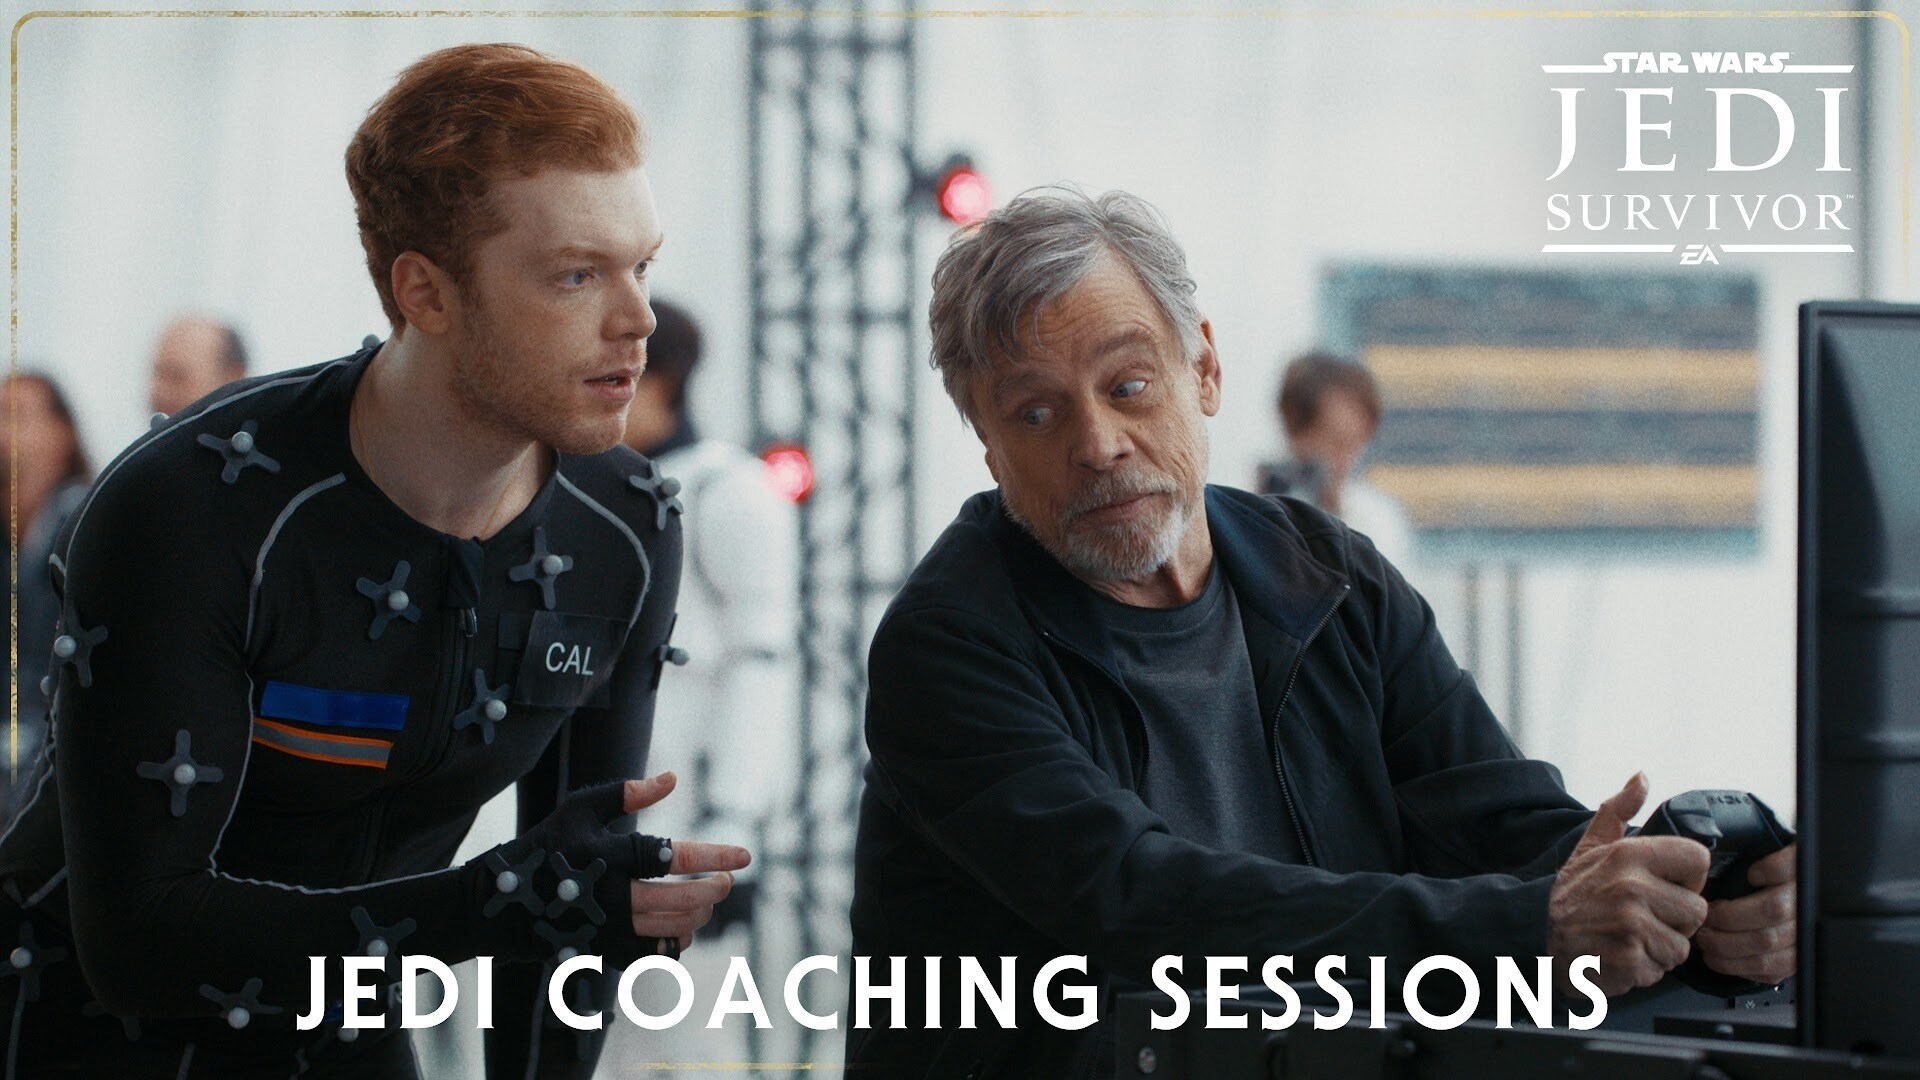 Jedi Coaching Sessions Trailer | Star Wars Jedi: Survivor